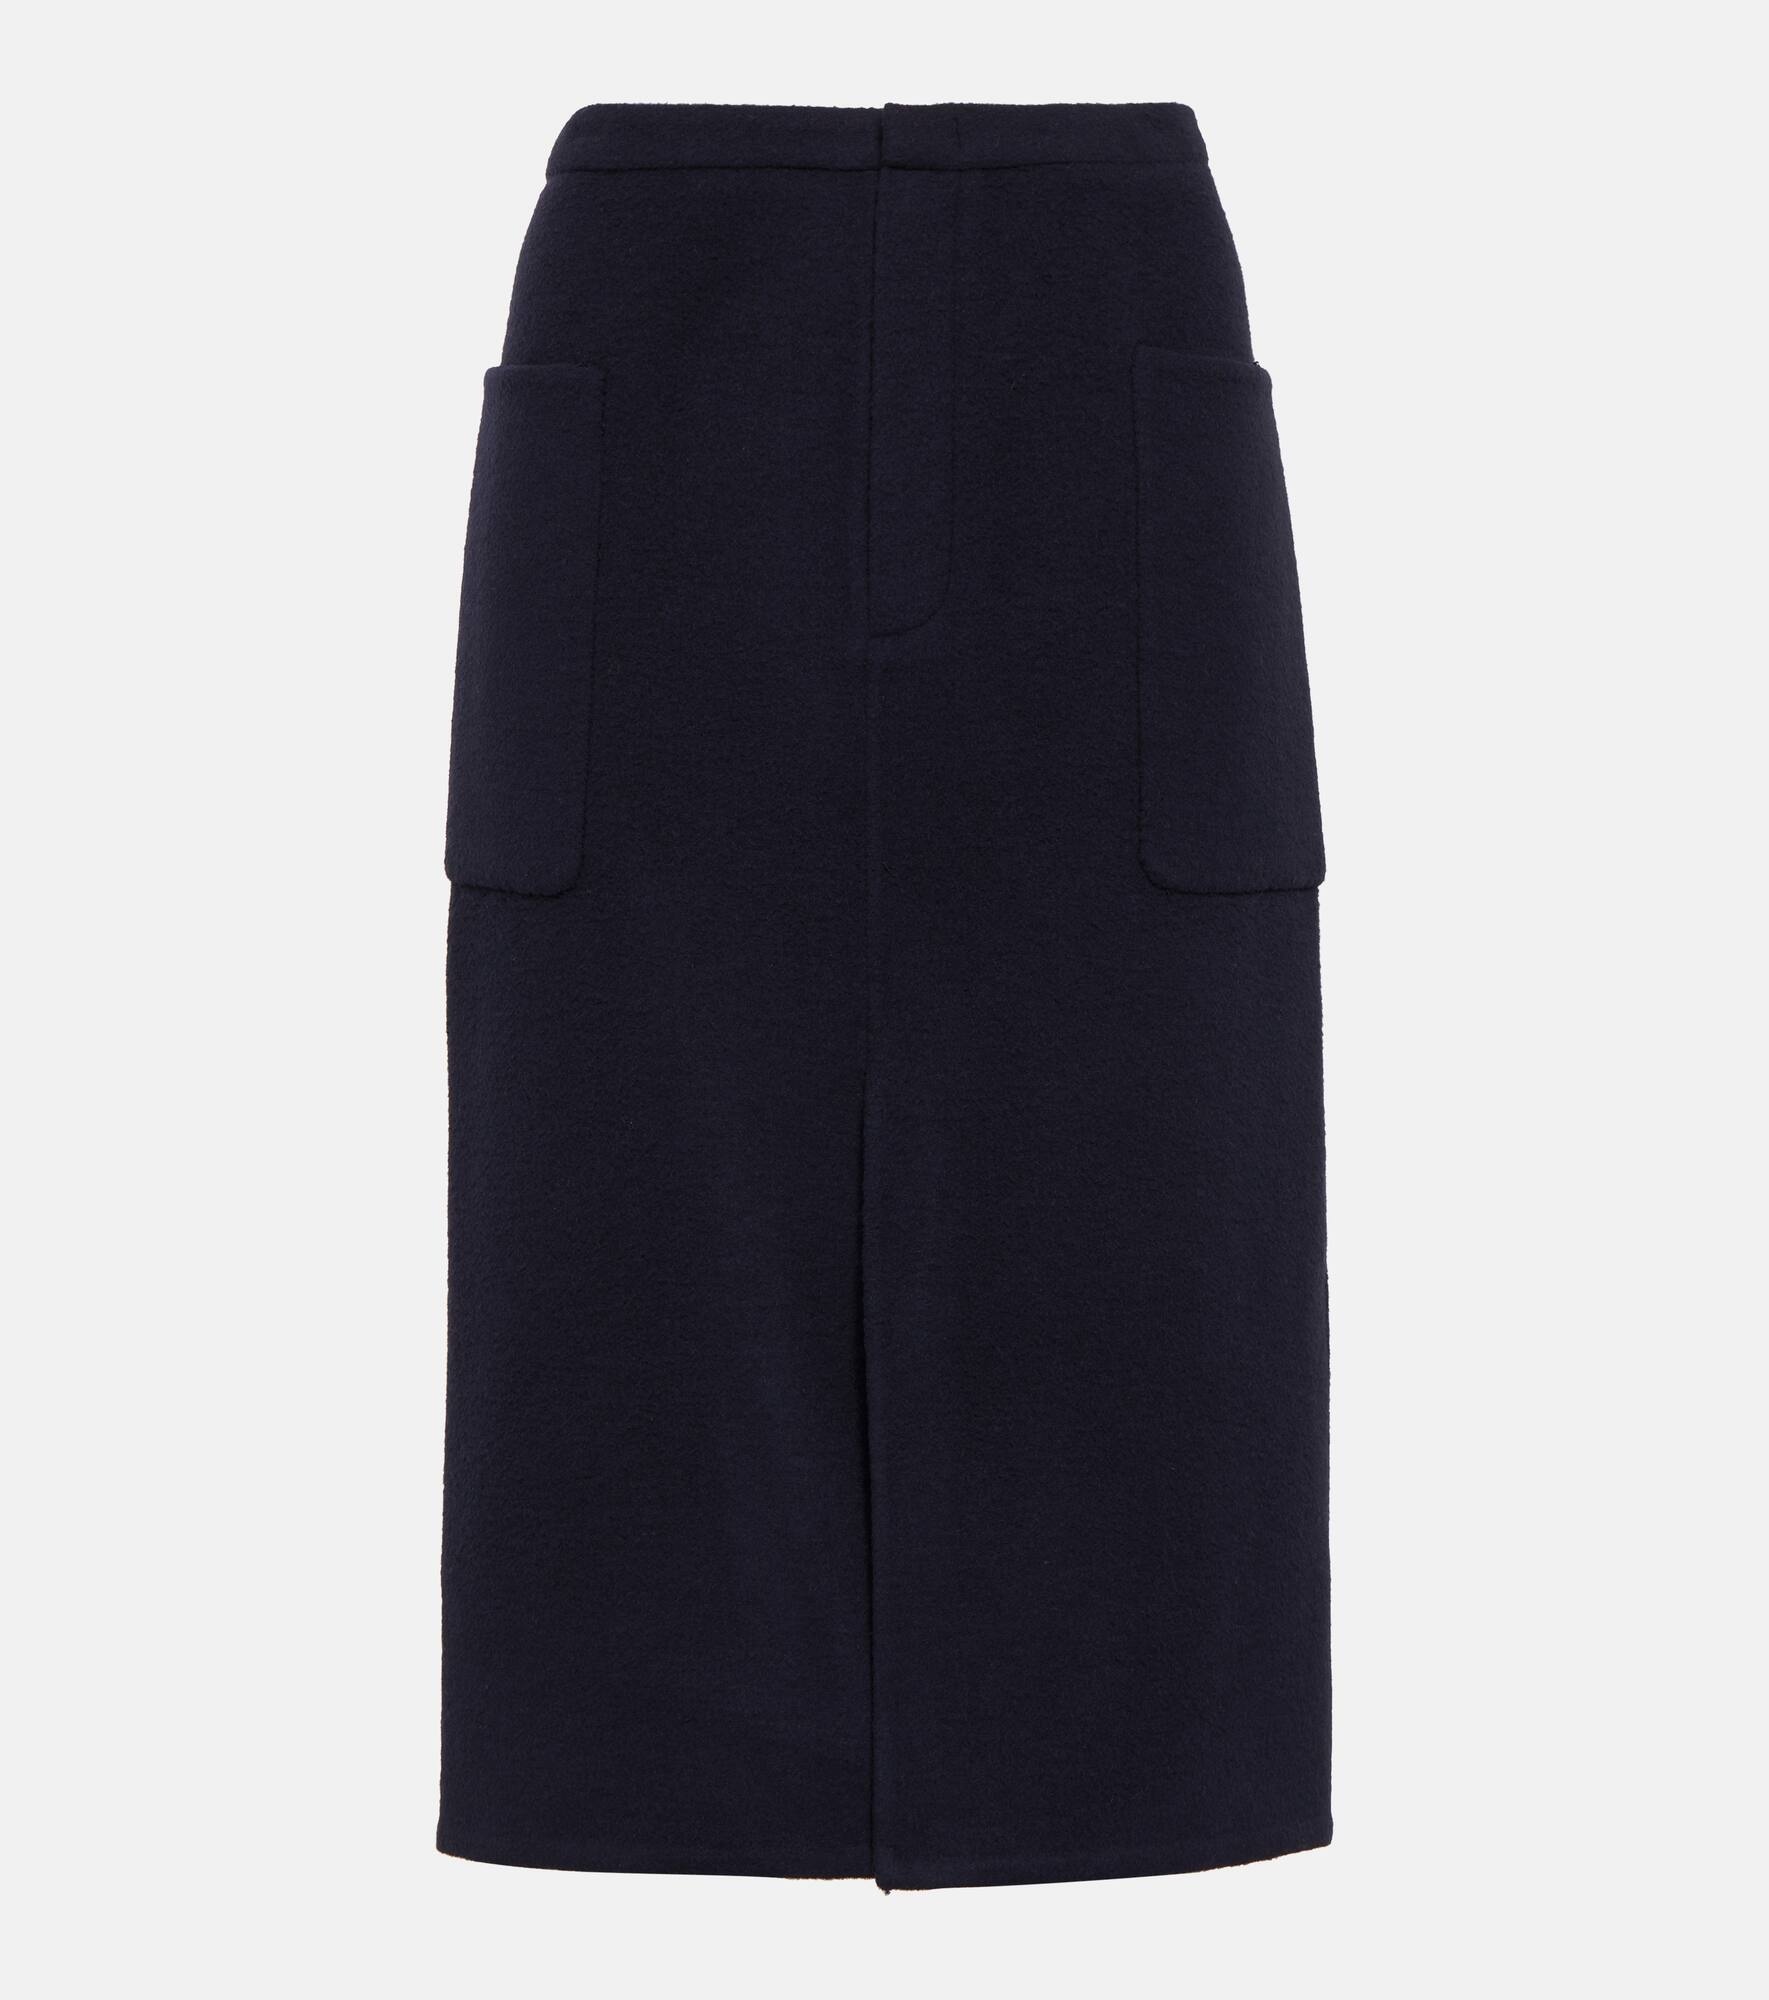 High-rise wool-blend pencil skirt - 1